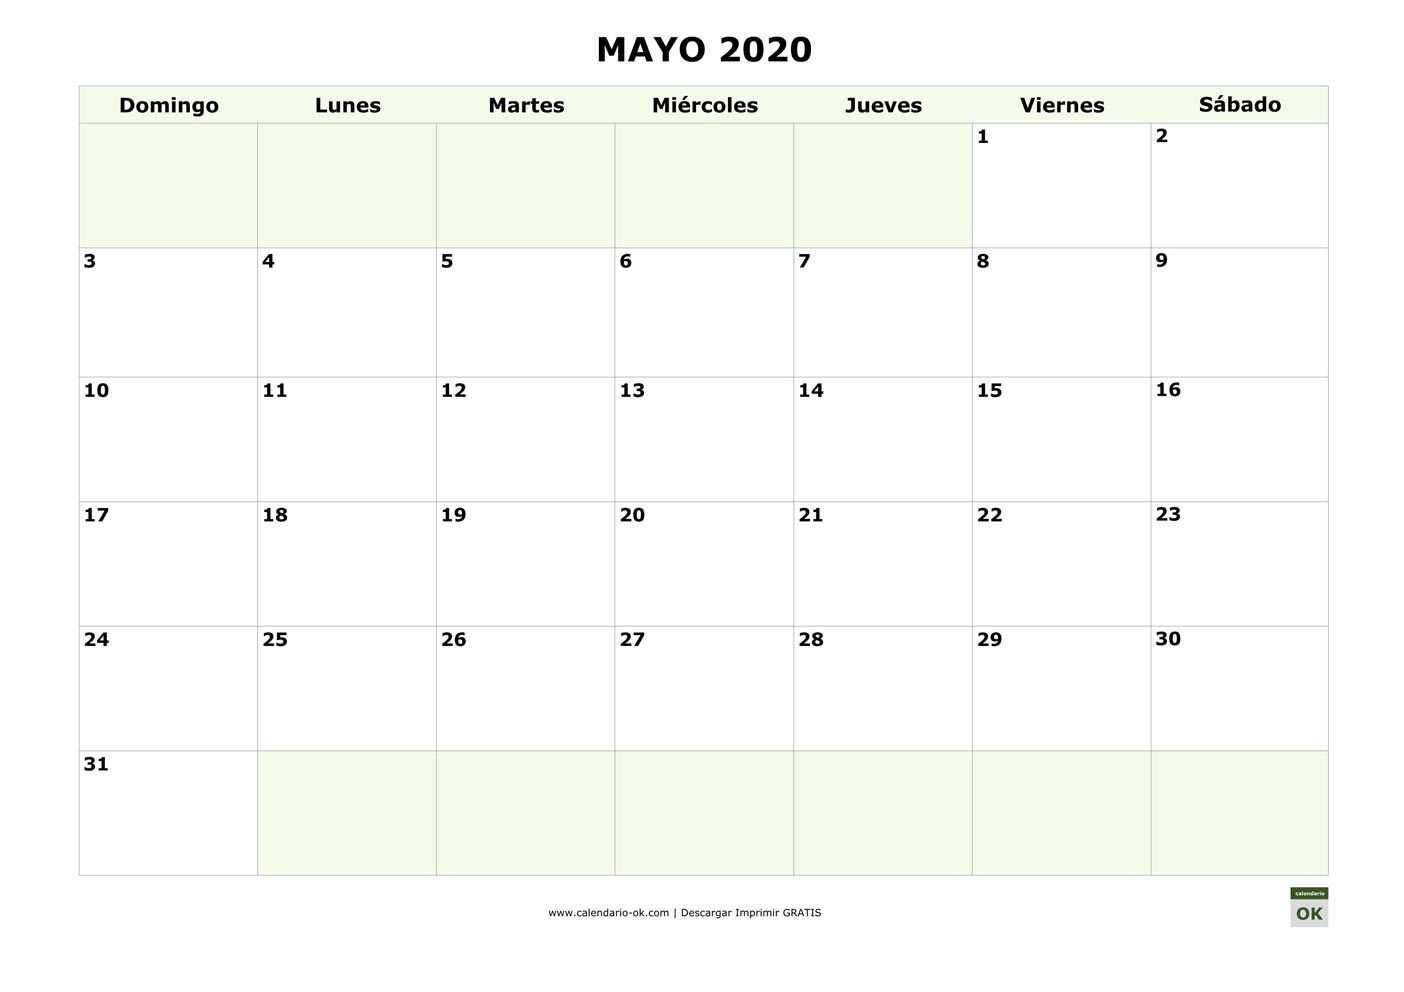 MAYO 2020 empieza por DOMINGO